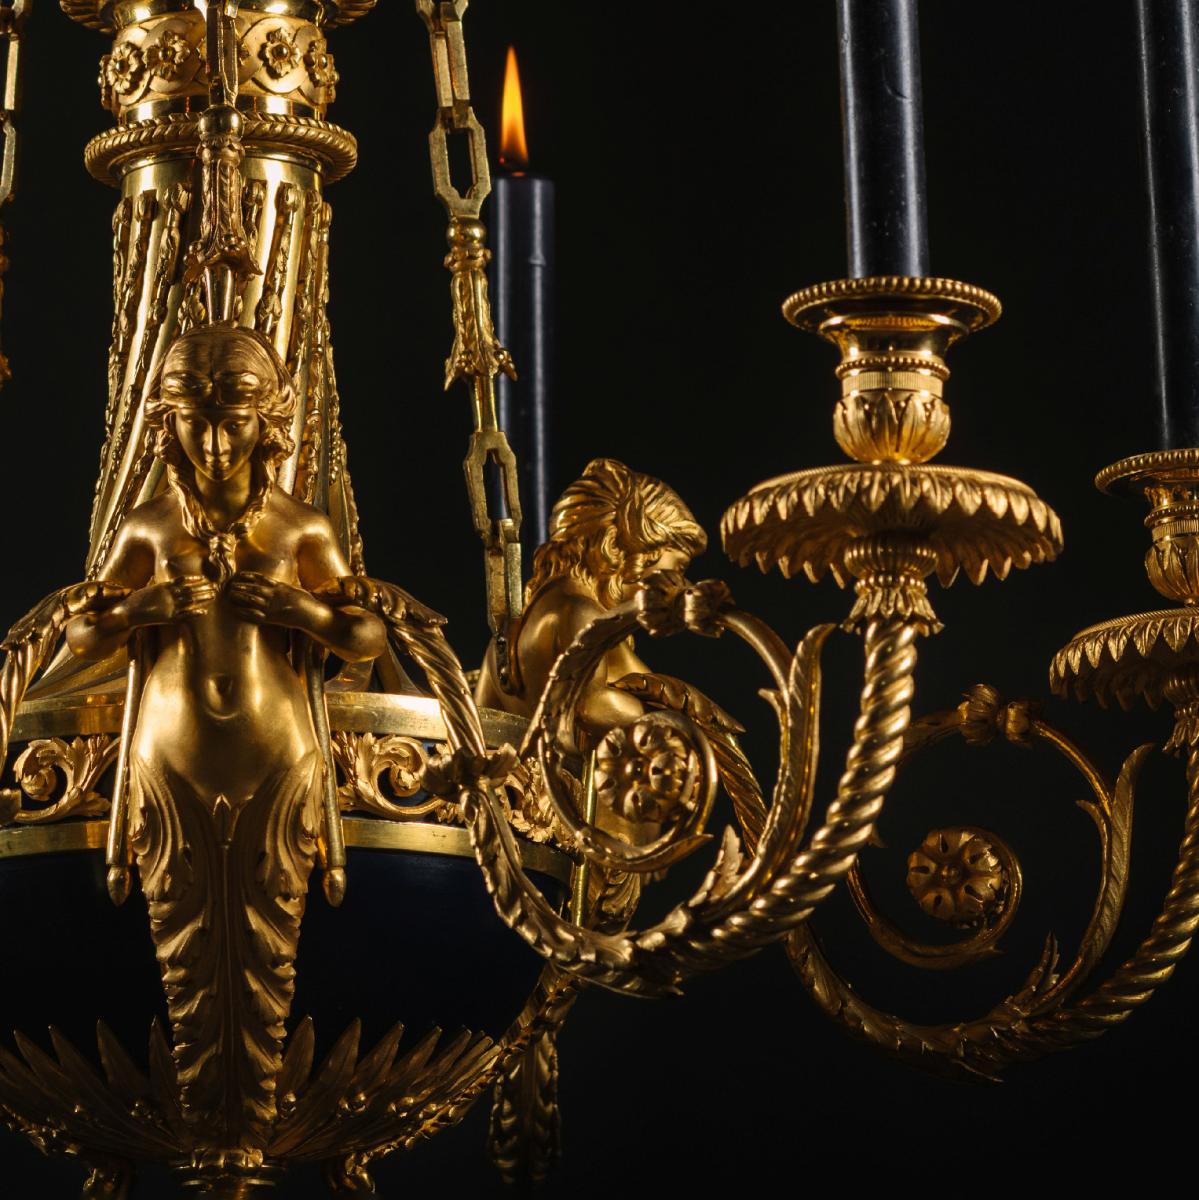 Louis XVI Style Six-Light Chandelier